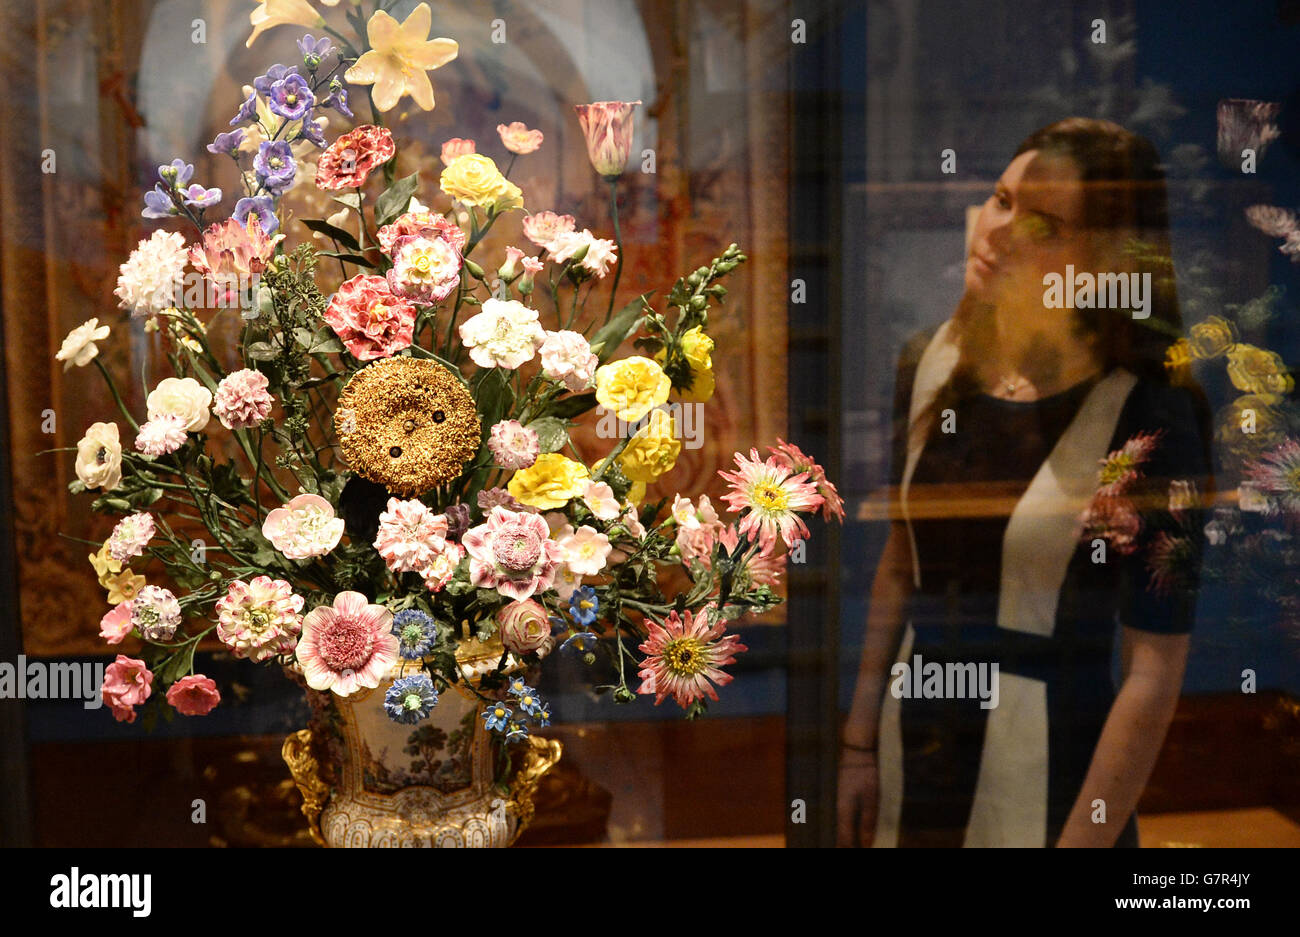 Une horloge de tournesol d'une hauteur d'un mètre, réalisée par l'usine de porcelaine de Vincennes en 1752, fait partie de l'exposition Painting Paradise: The Art of the Garden, à la Queen's Gallery de Buckingham Palace, Londres. Banque D'Images